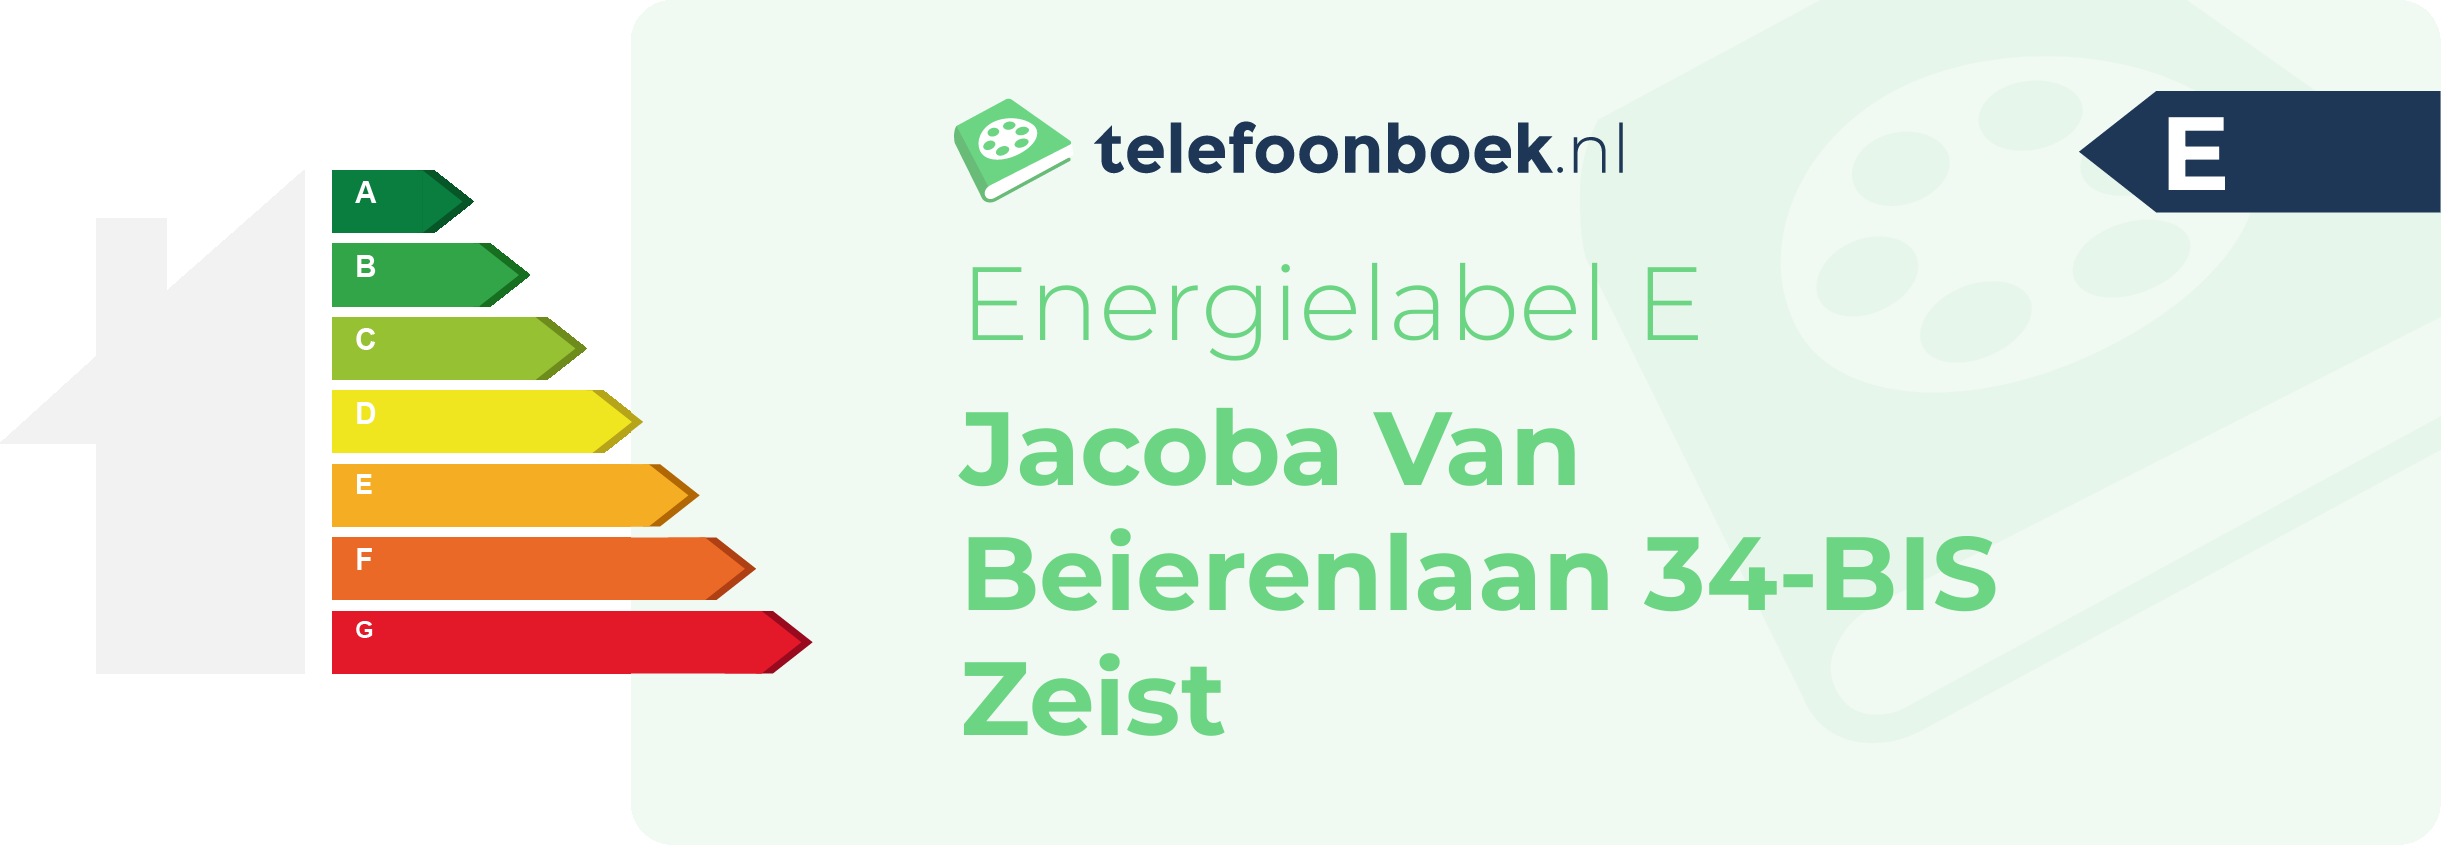 Energielabel Jacoba Van Beierenlaan 34-BIS Zeist